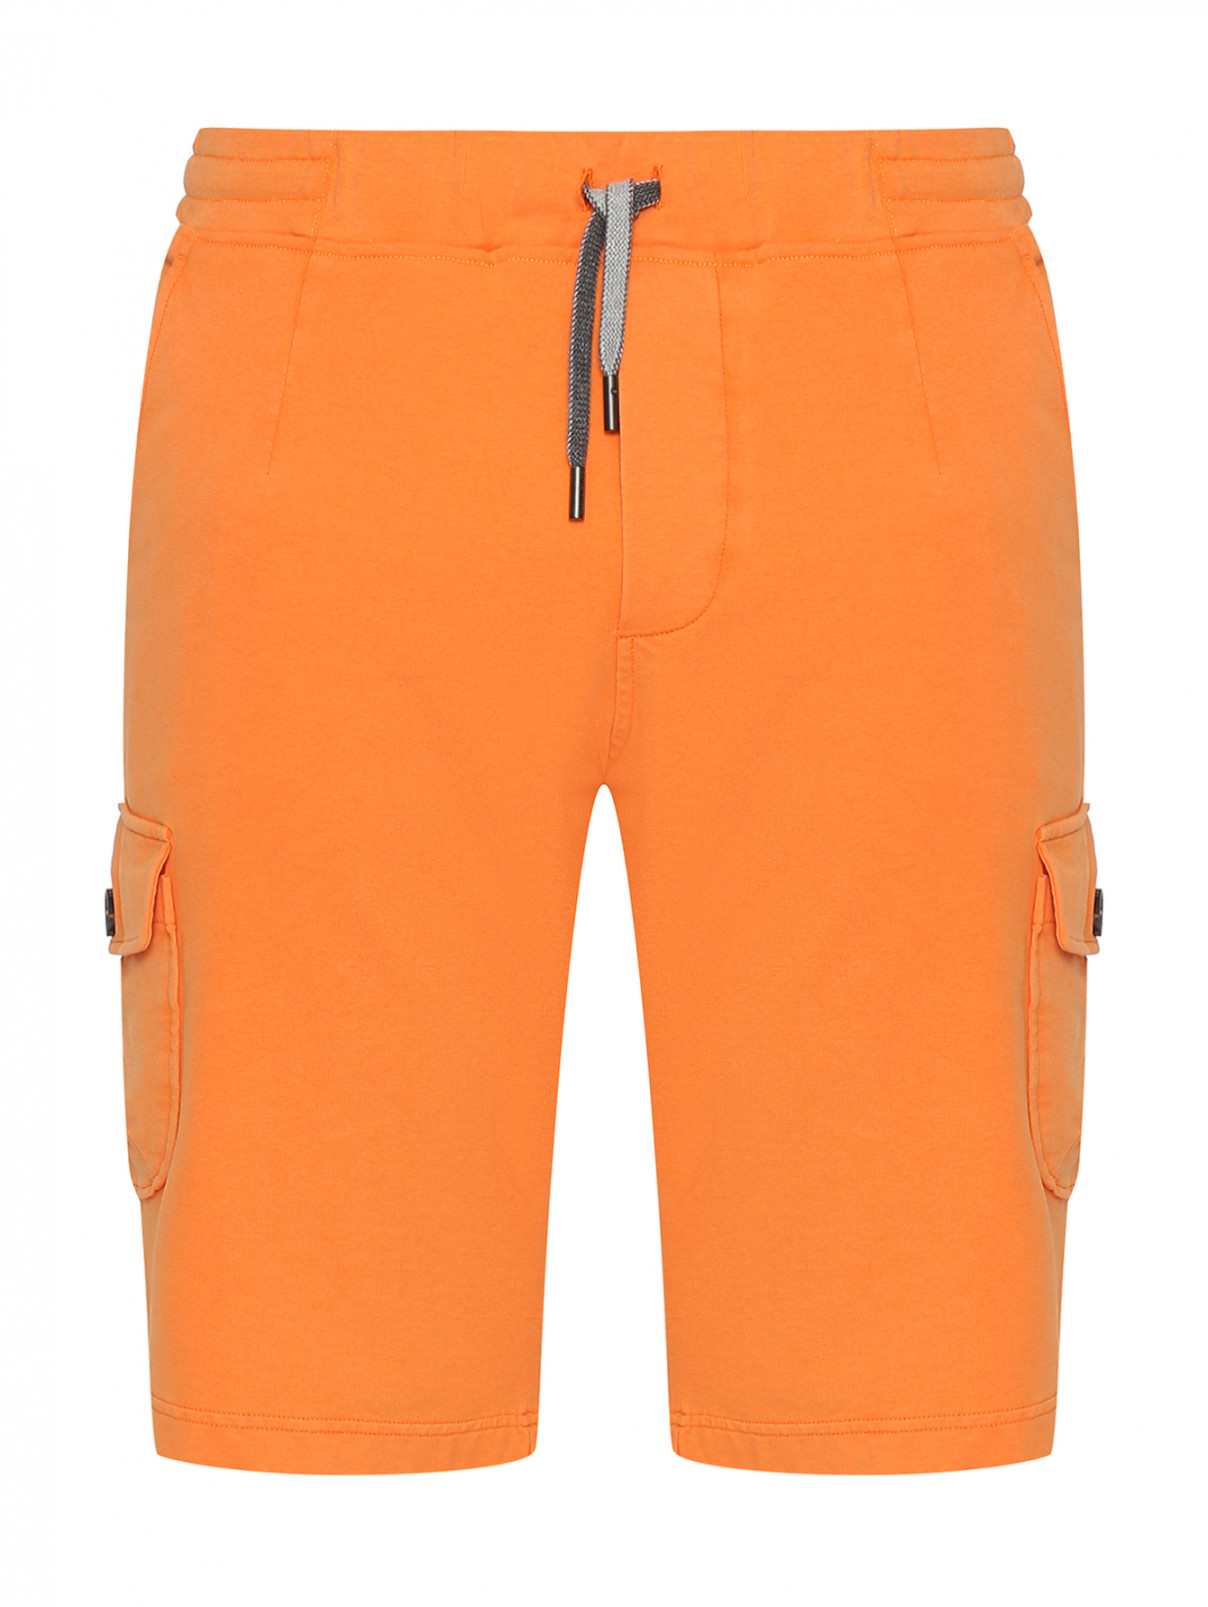 Шорты из хлопка с накладными карманами Capobianco  –  Общий вид  – Цвет:  Оранжевый